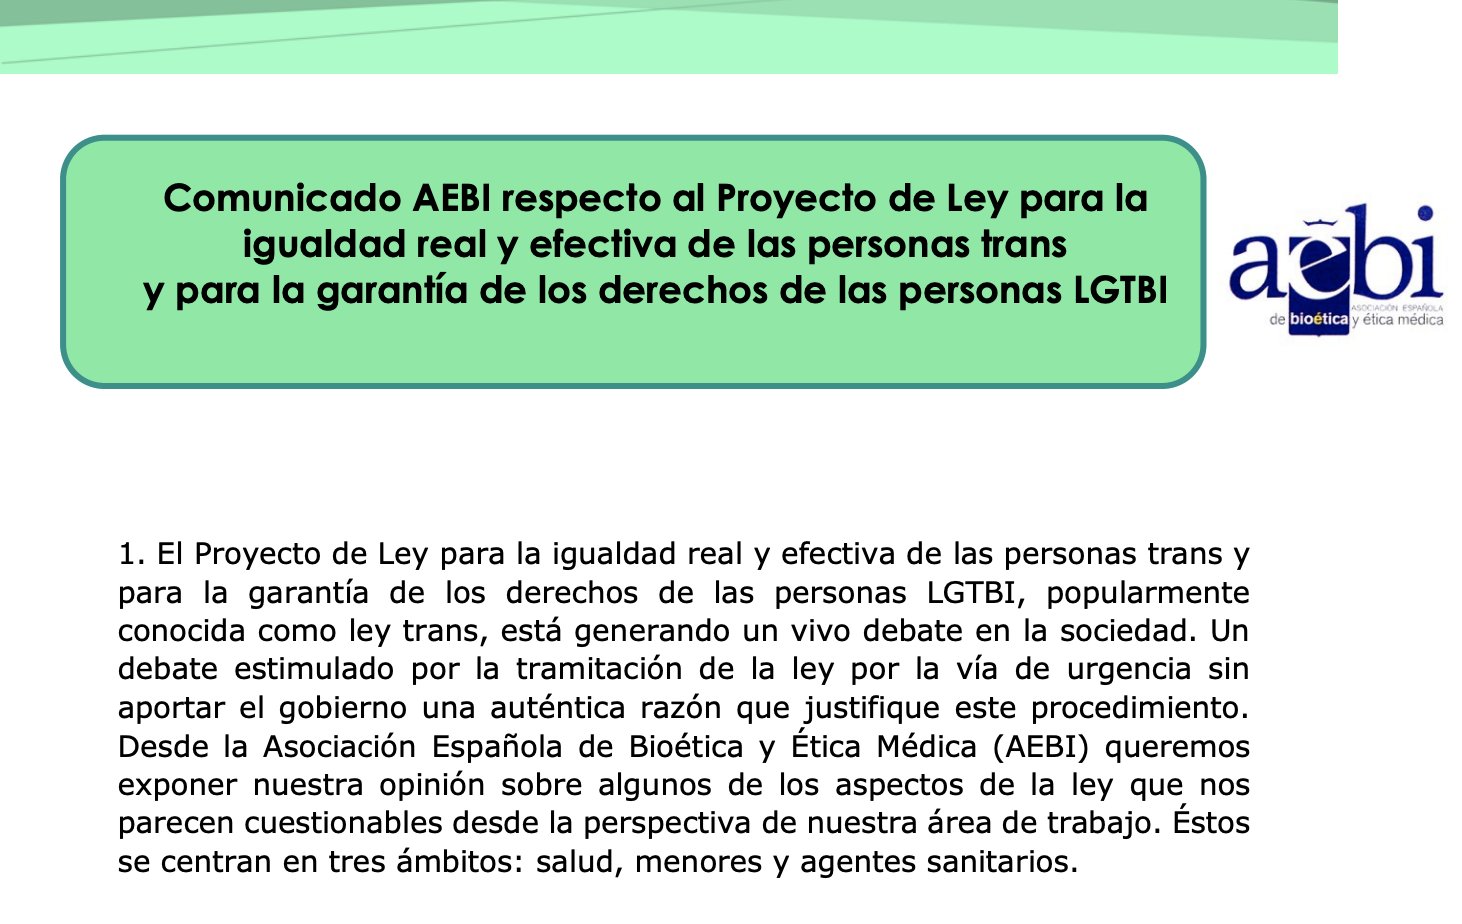 Comunicado AEBI sobre el Proyecto de Ley para las personas trans y los derechos de las personas LGTBI